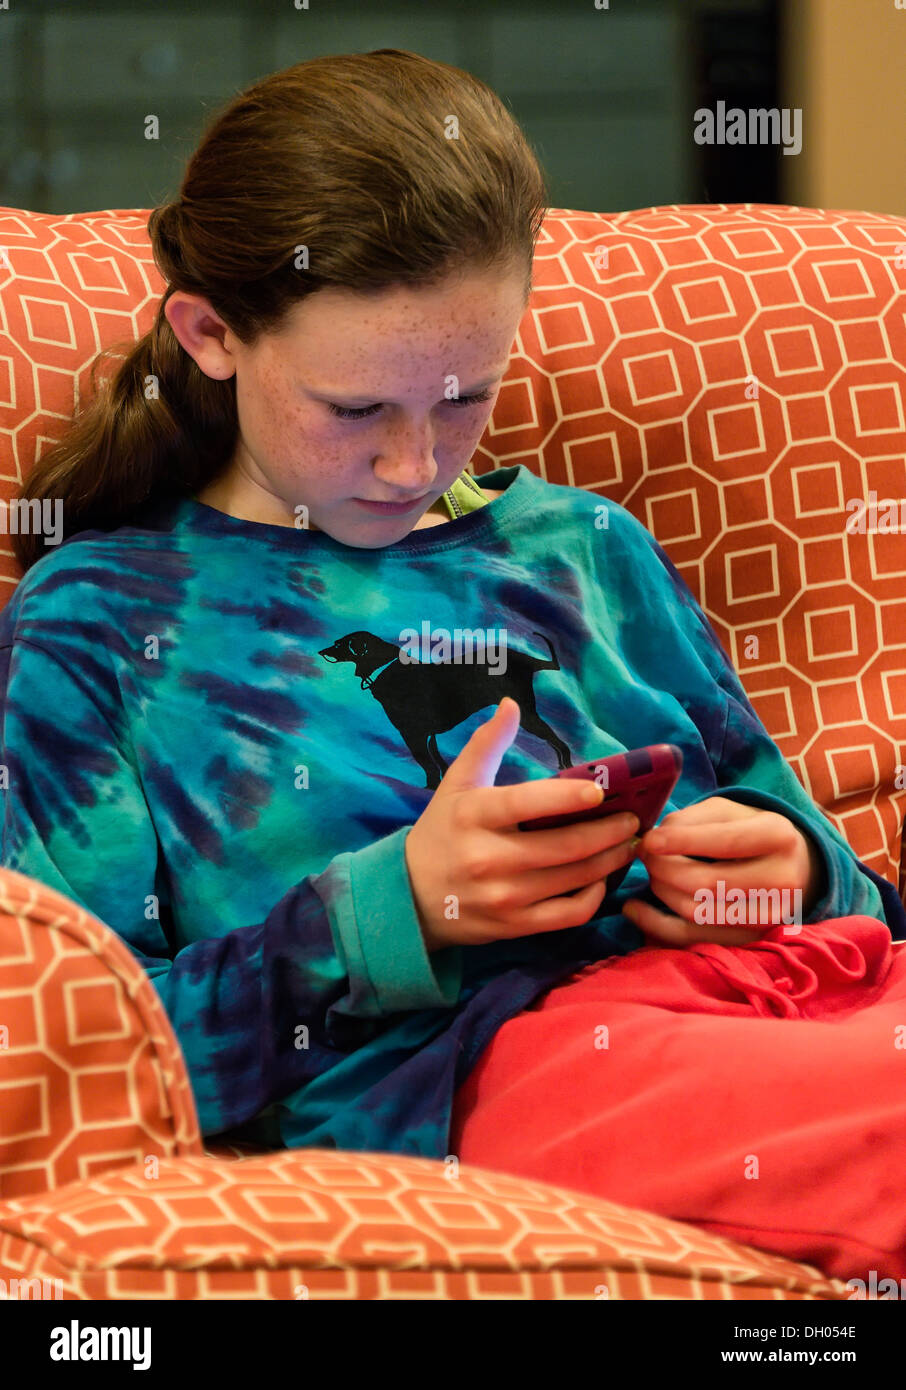 Zwölf Jahre altes Mädchen eine SMS-Nachricht auf ihr Handy-Gerät lesen. Stockfoto